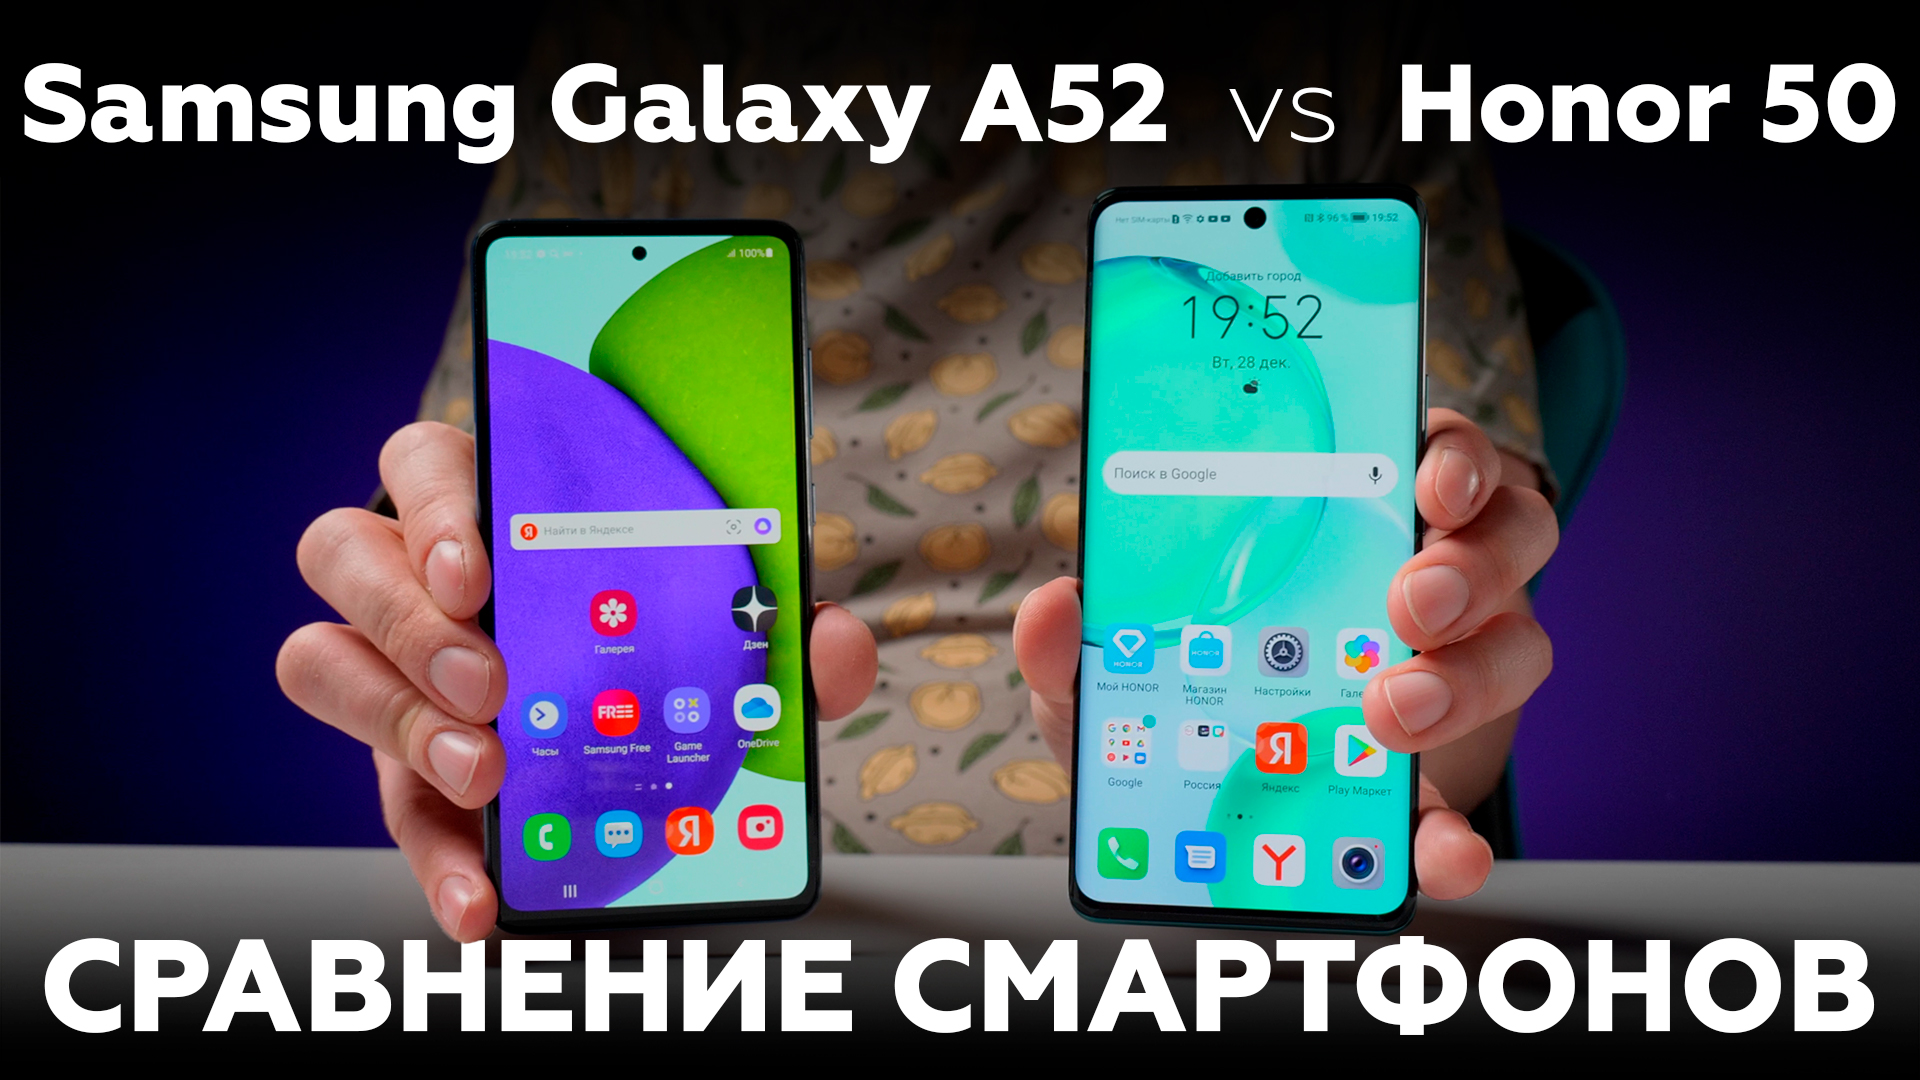 Сравниваем смартфоны Honor 50 и Samsung Galaxy A52